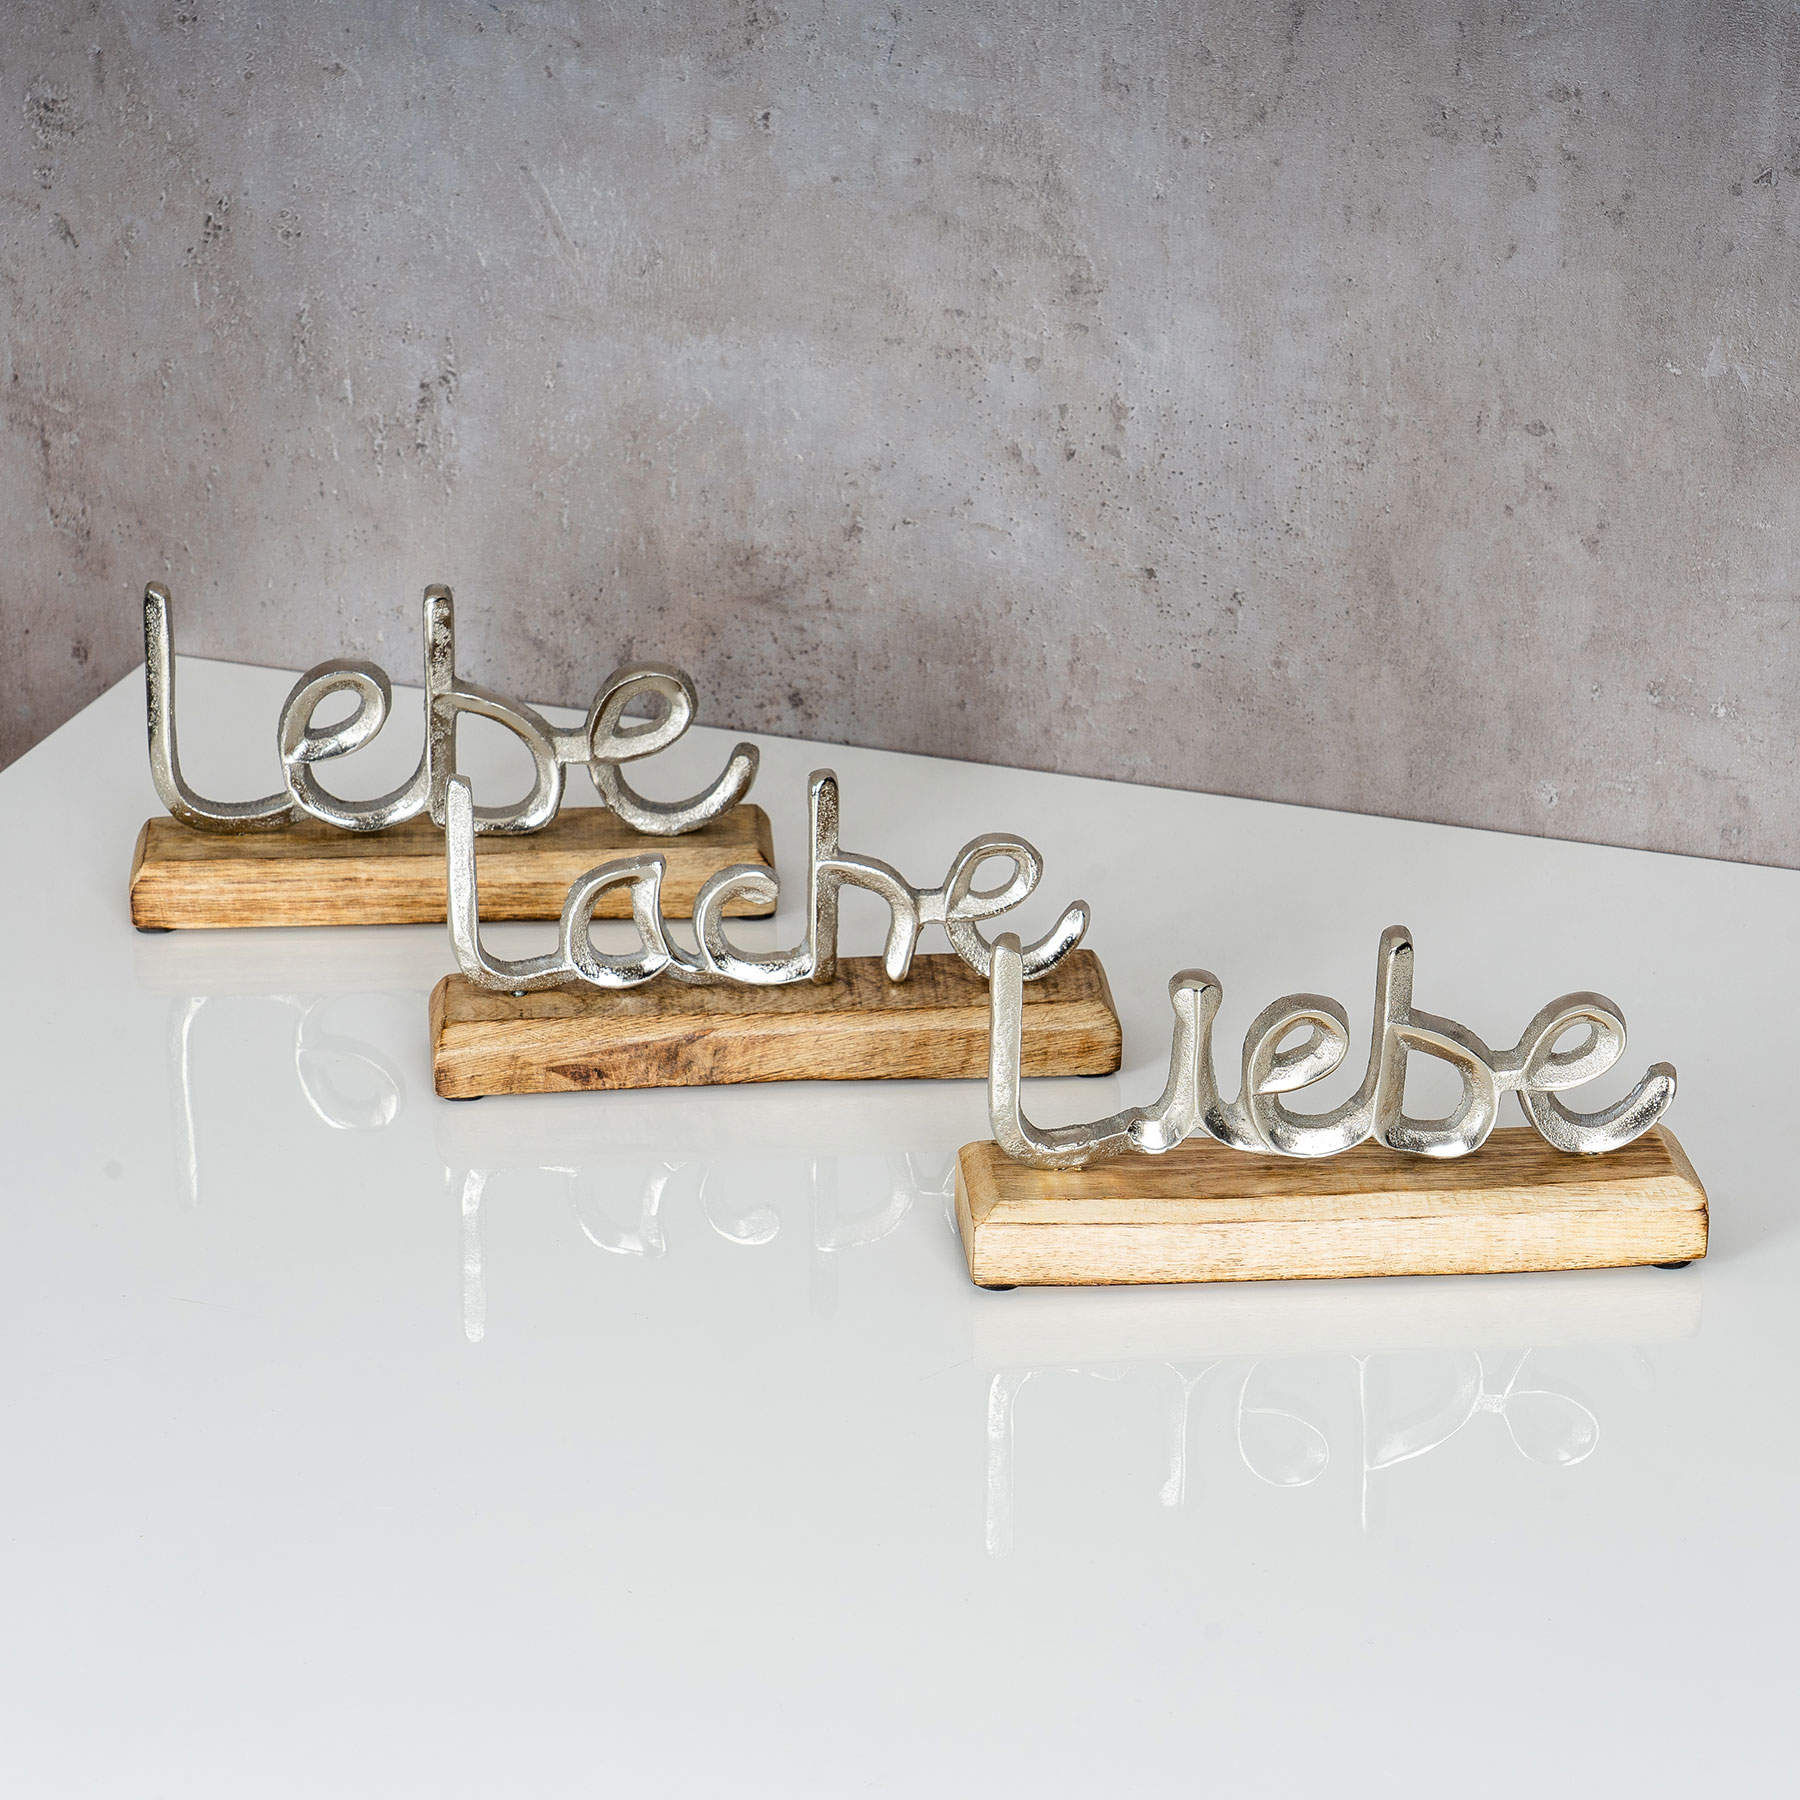 3er Set Metall Deko L23cm Mango Liebe Silber Lebe Holz Lache Schriftzug